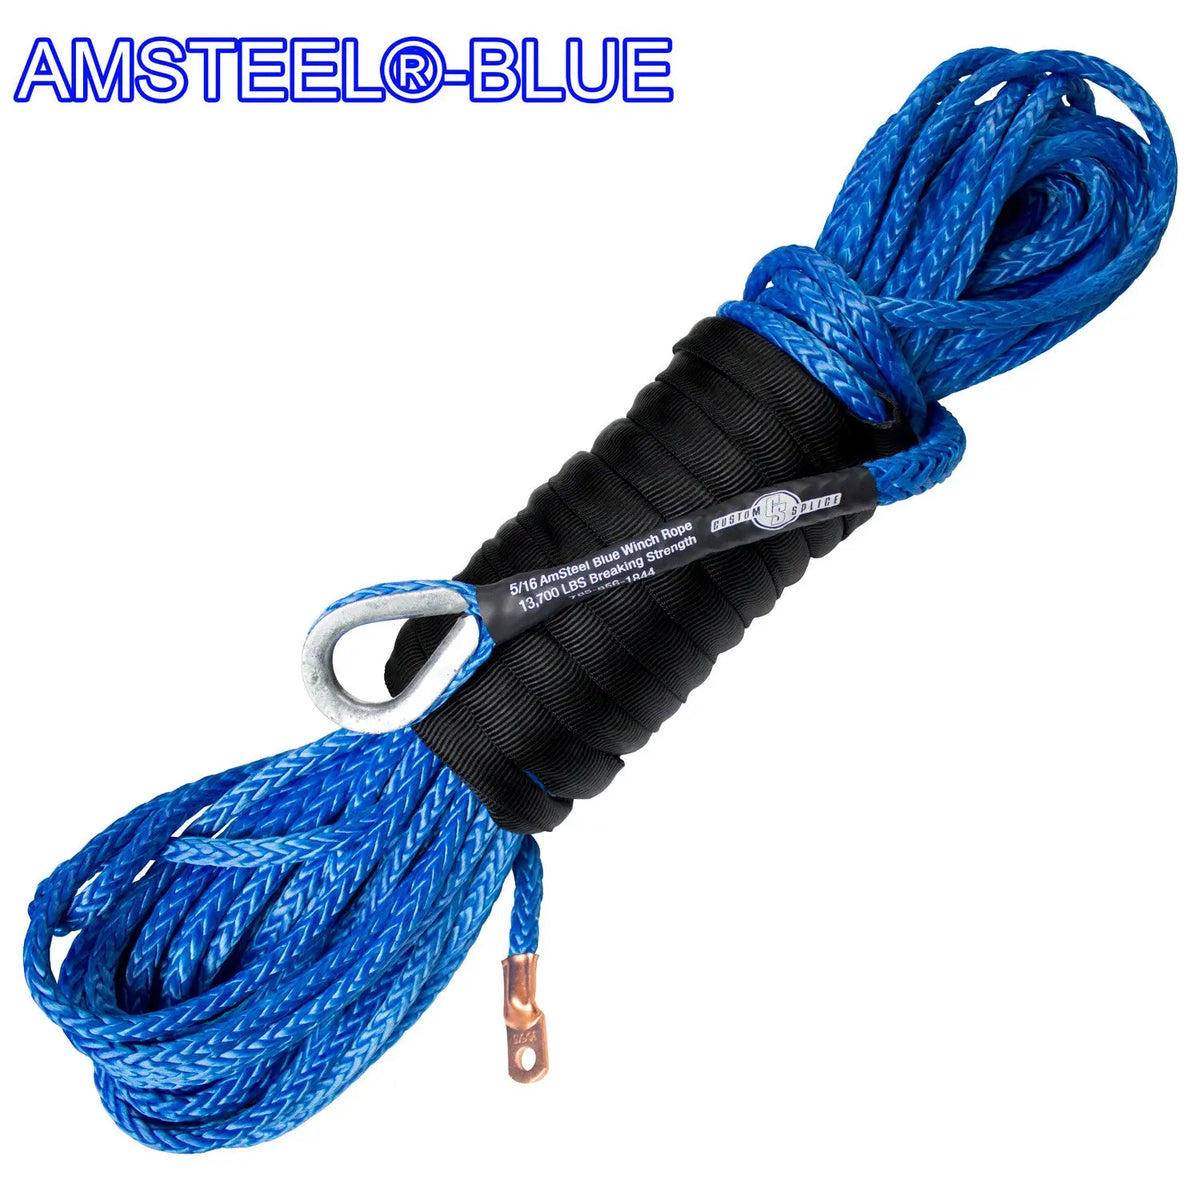 https://cdn.shopify.com/s/files/1/1553/7743/files/5-16-x-35-foot-Main-Line-Winch-Rope---AmSteel_Blue-Custom-Splice---AmSteel-Blue-1694570891322.jpg?v=1694570892&width=1200